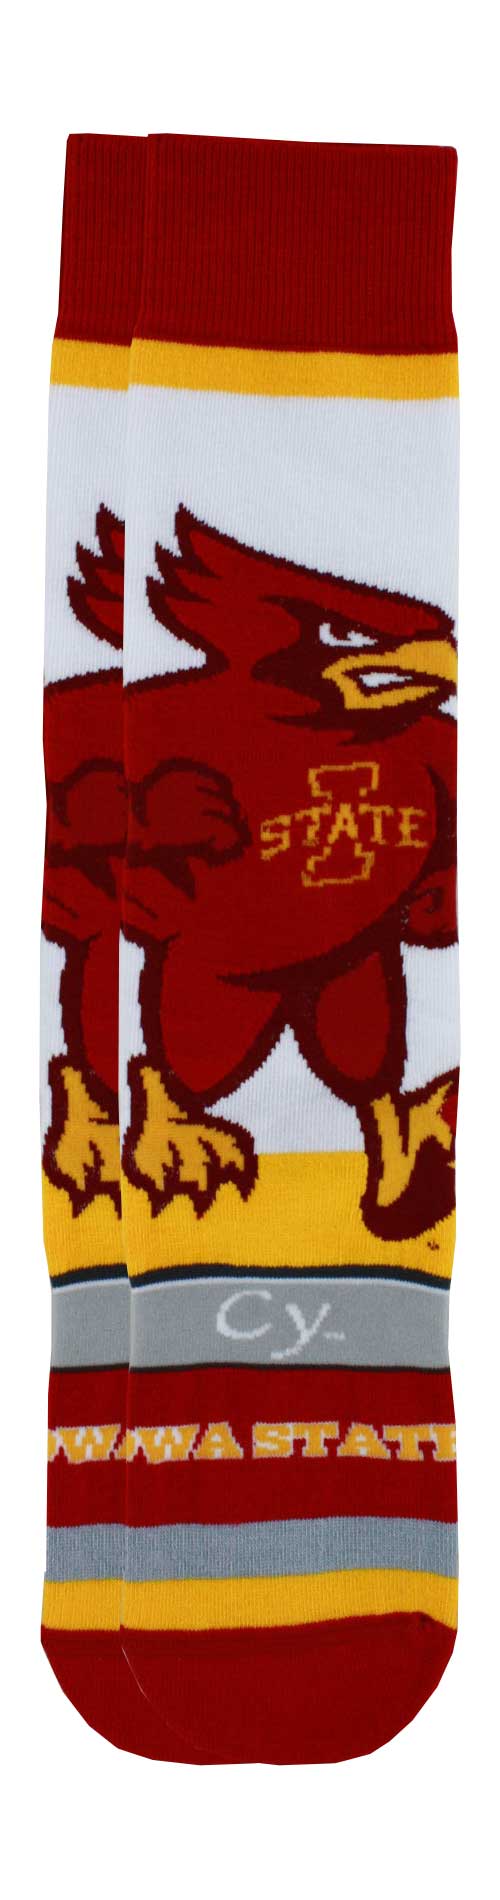 Iowa State Cyclones Mascot Socks